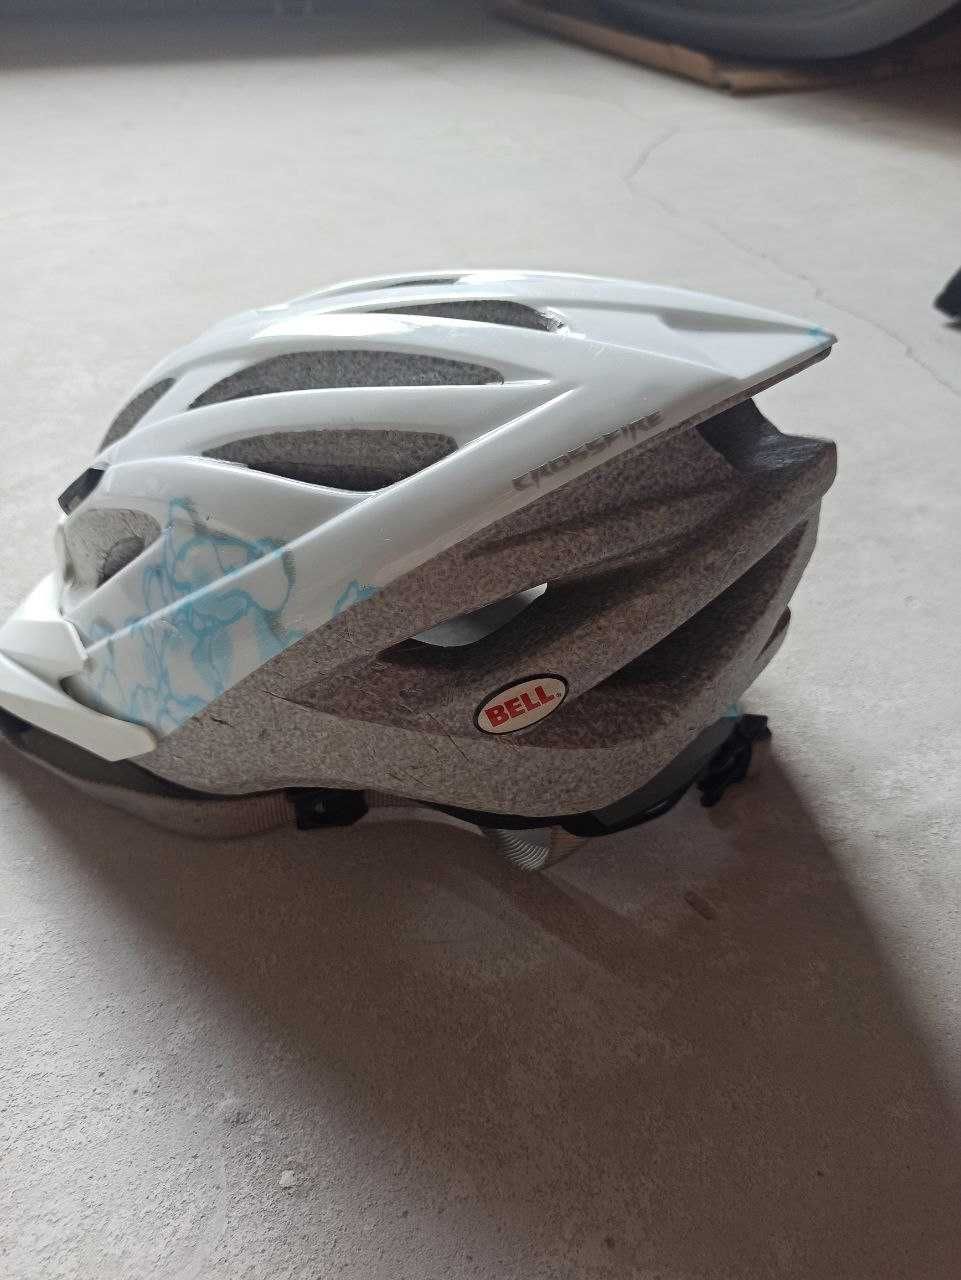 Шлем защитный Bell Crossfire, женский М, велосипедный, Германия